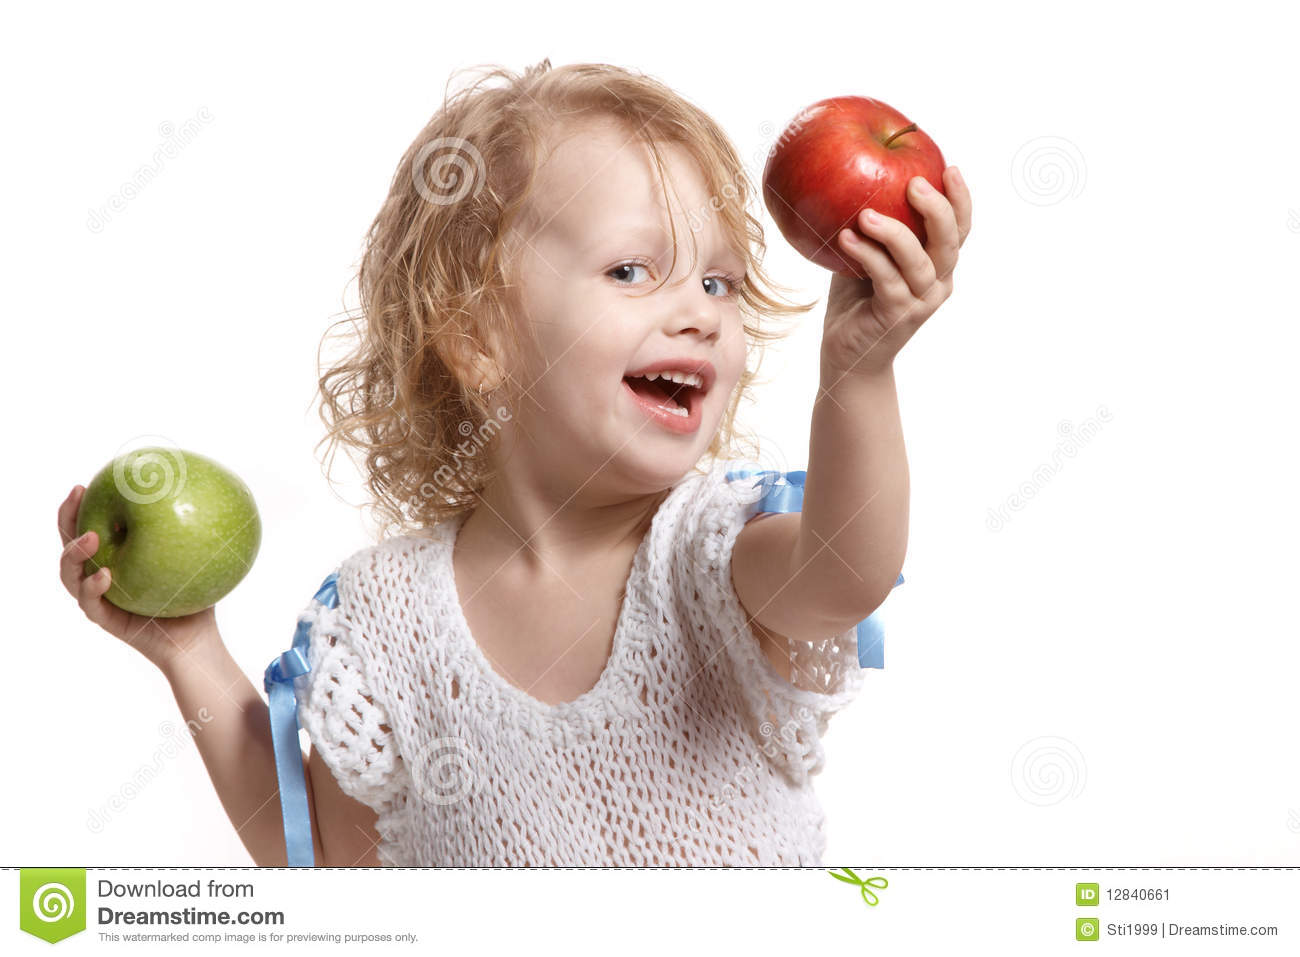 Мама ест яблоко. Мальчик с яблоком в руках. Девочка с яблоками. Яблоко для детей. Яблоко в руках ребенка.